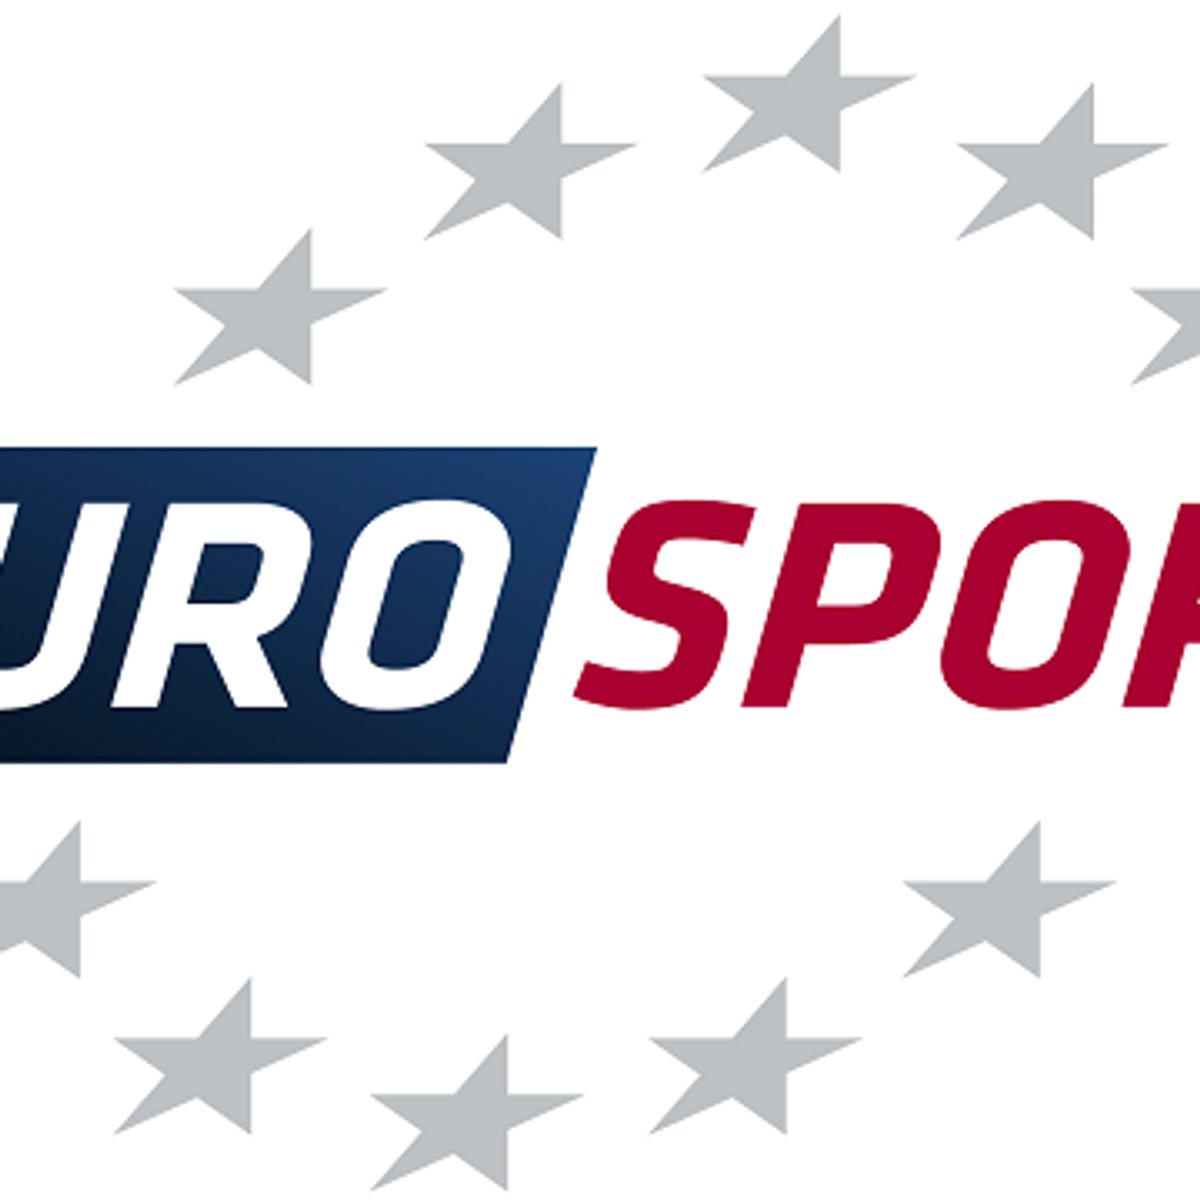 Eurosport 2 empfangen So gehts über Kabel, Satellit und online